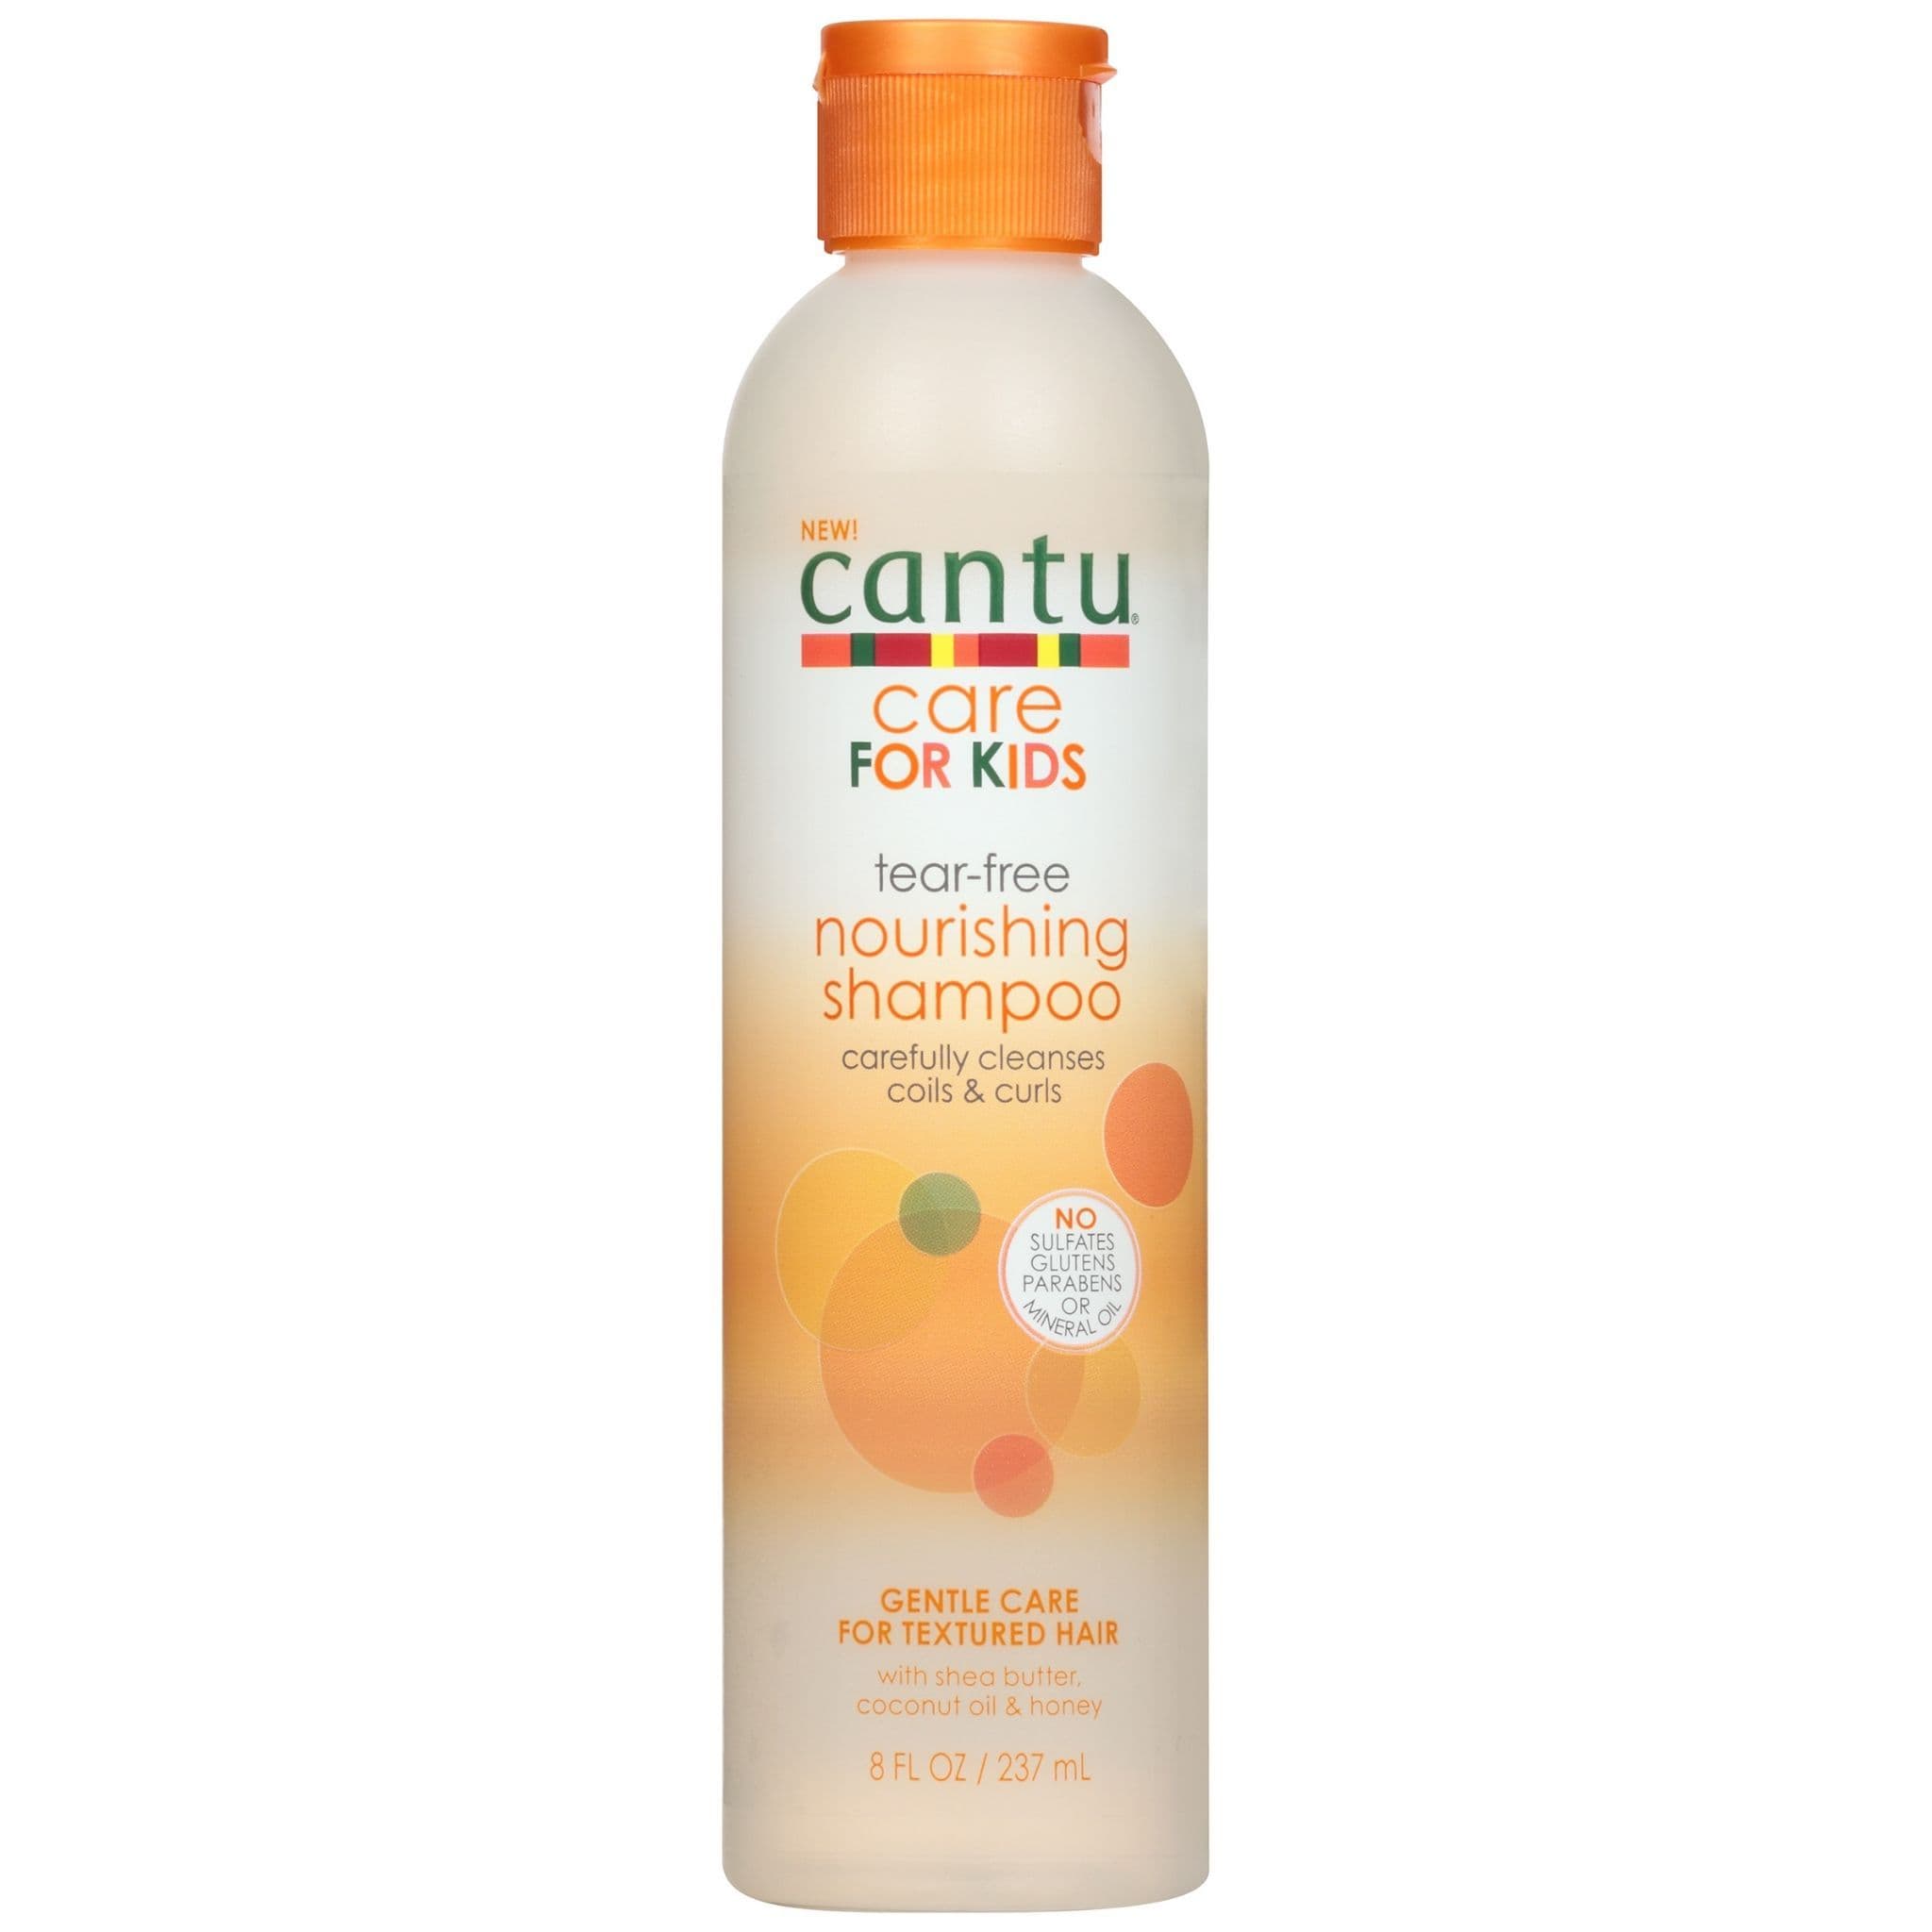 Cantu Care For Kids Tear-Free Nourishing Shampoo